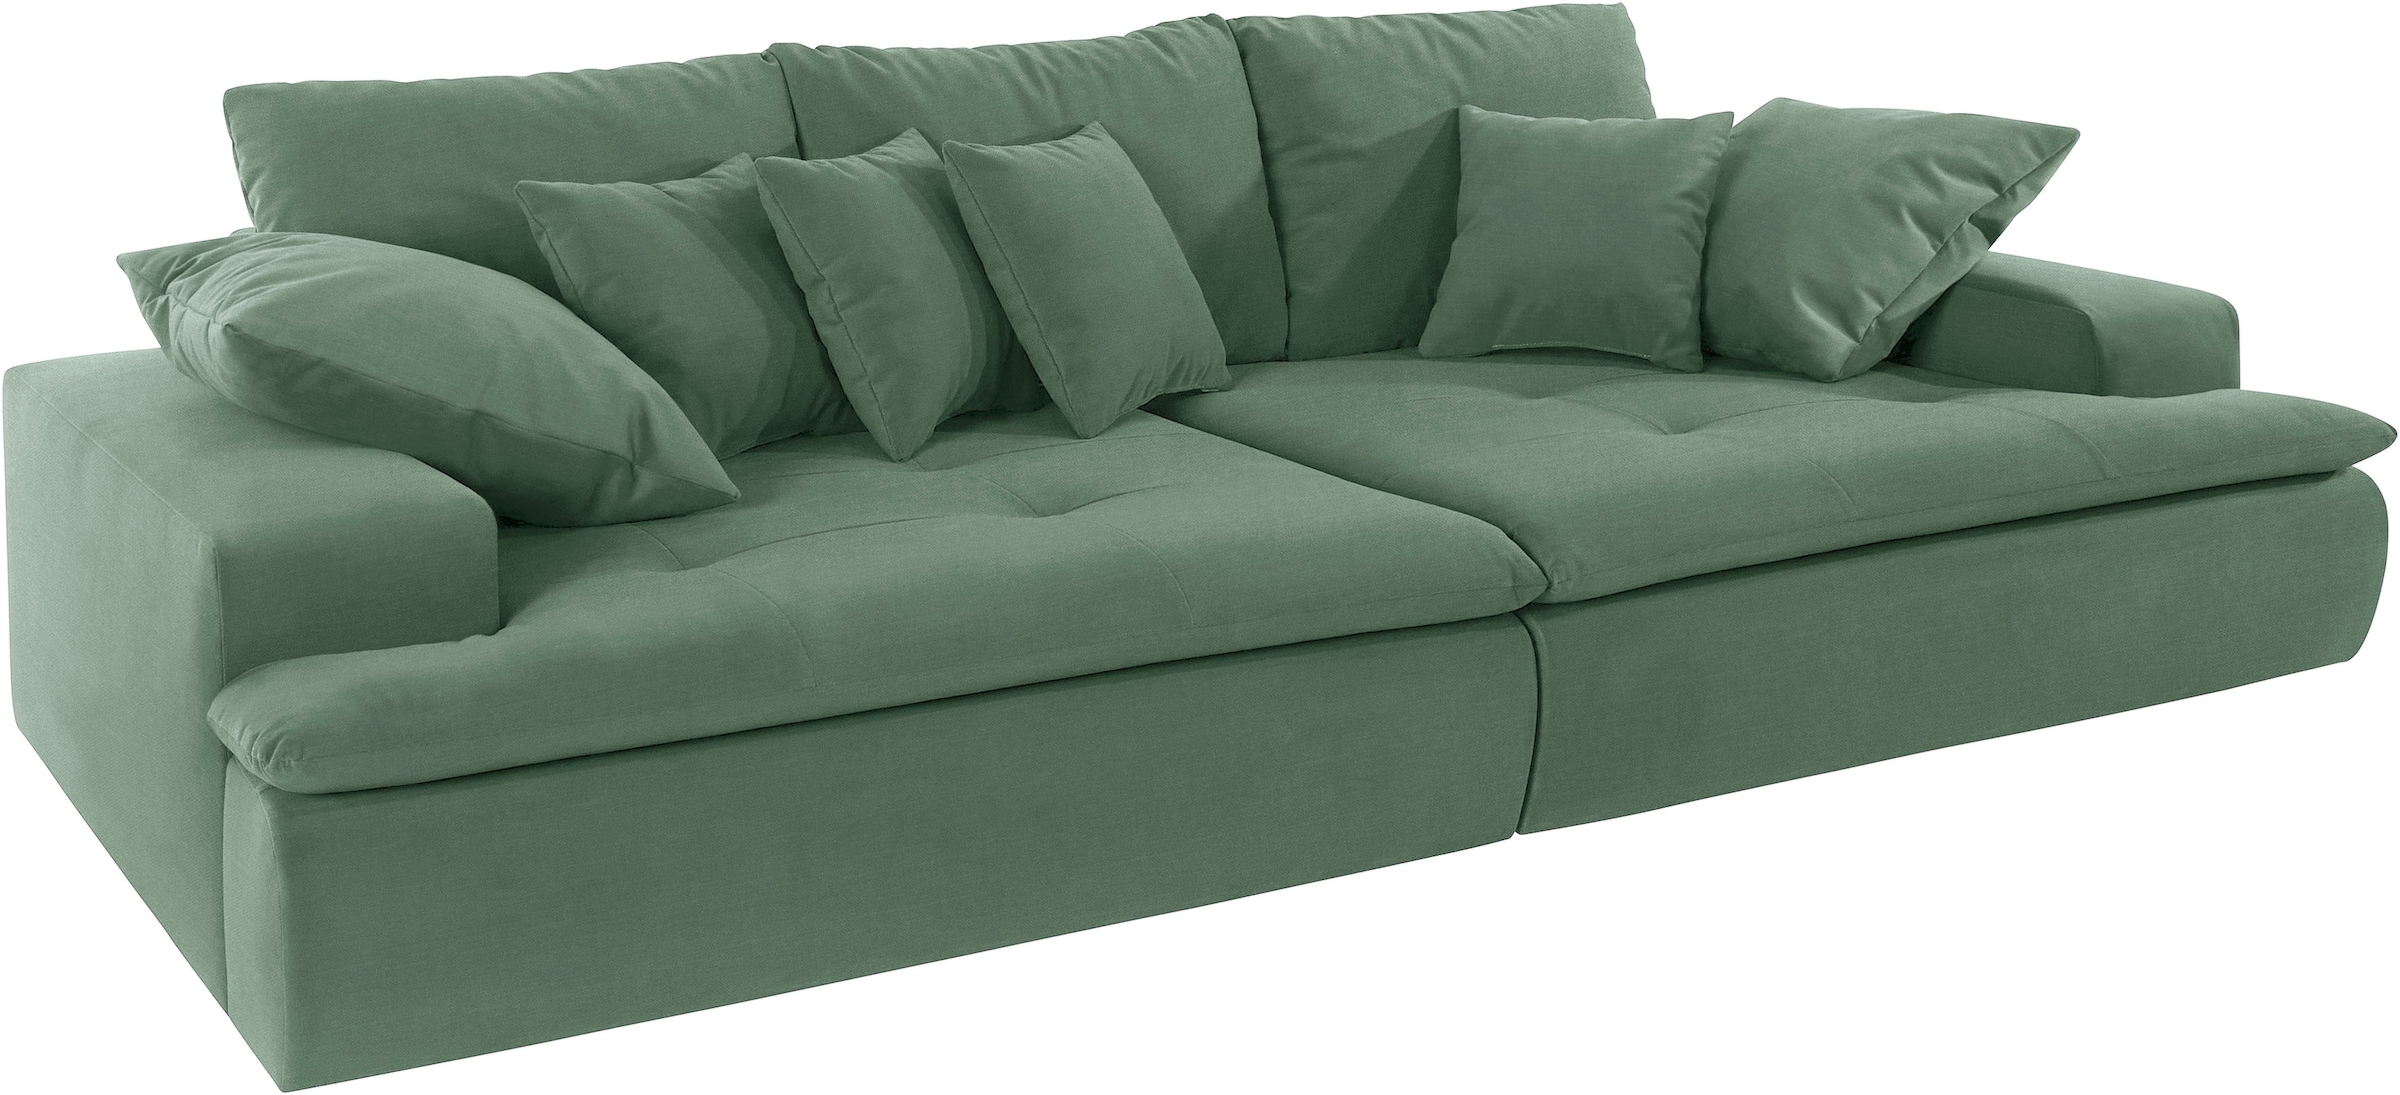 Big-Sofa »Haiti«, wahlweise mit Kaltschaum (140kg Belastung/Sitz) und AquaClean-Stoff